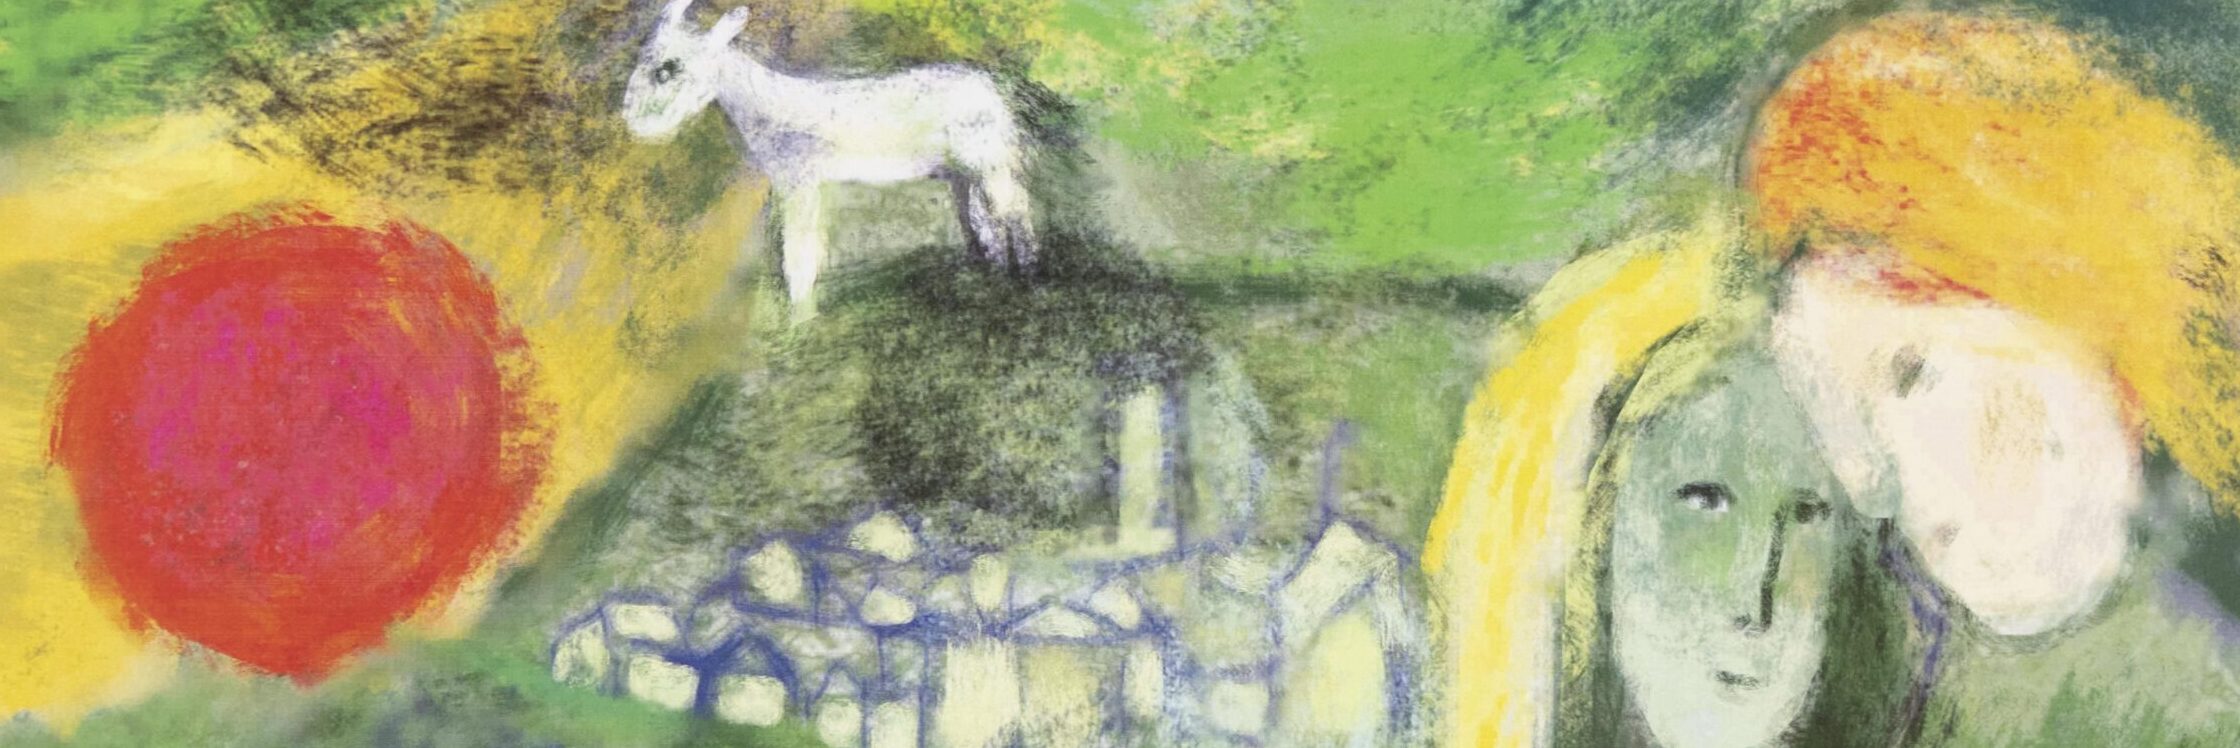 Rysunek przedstawia kobietę i mężczyznę w objęciach, obok stoi koza